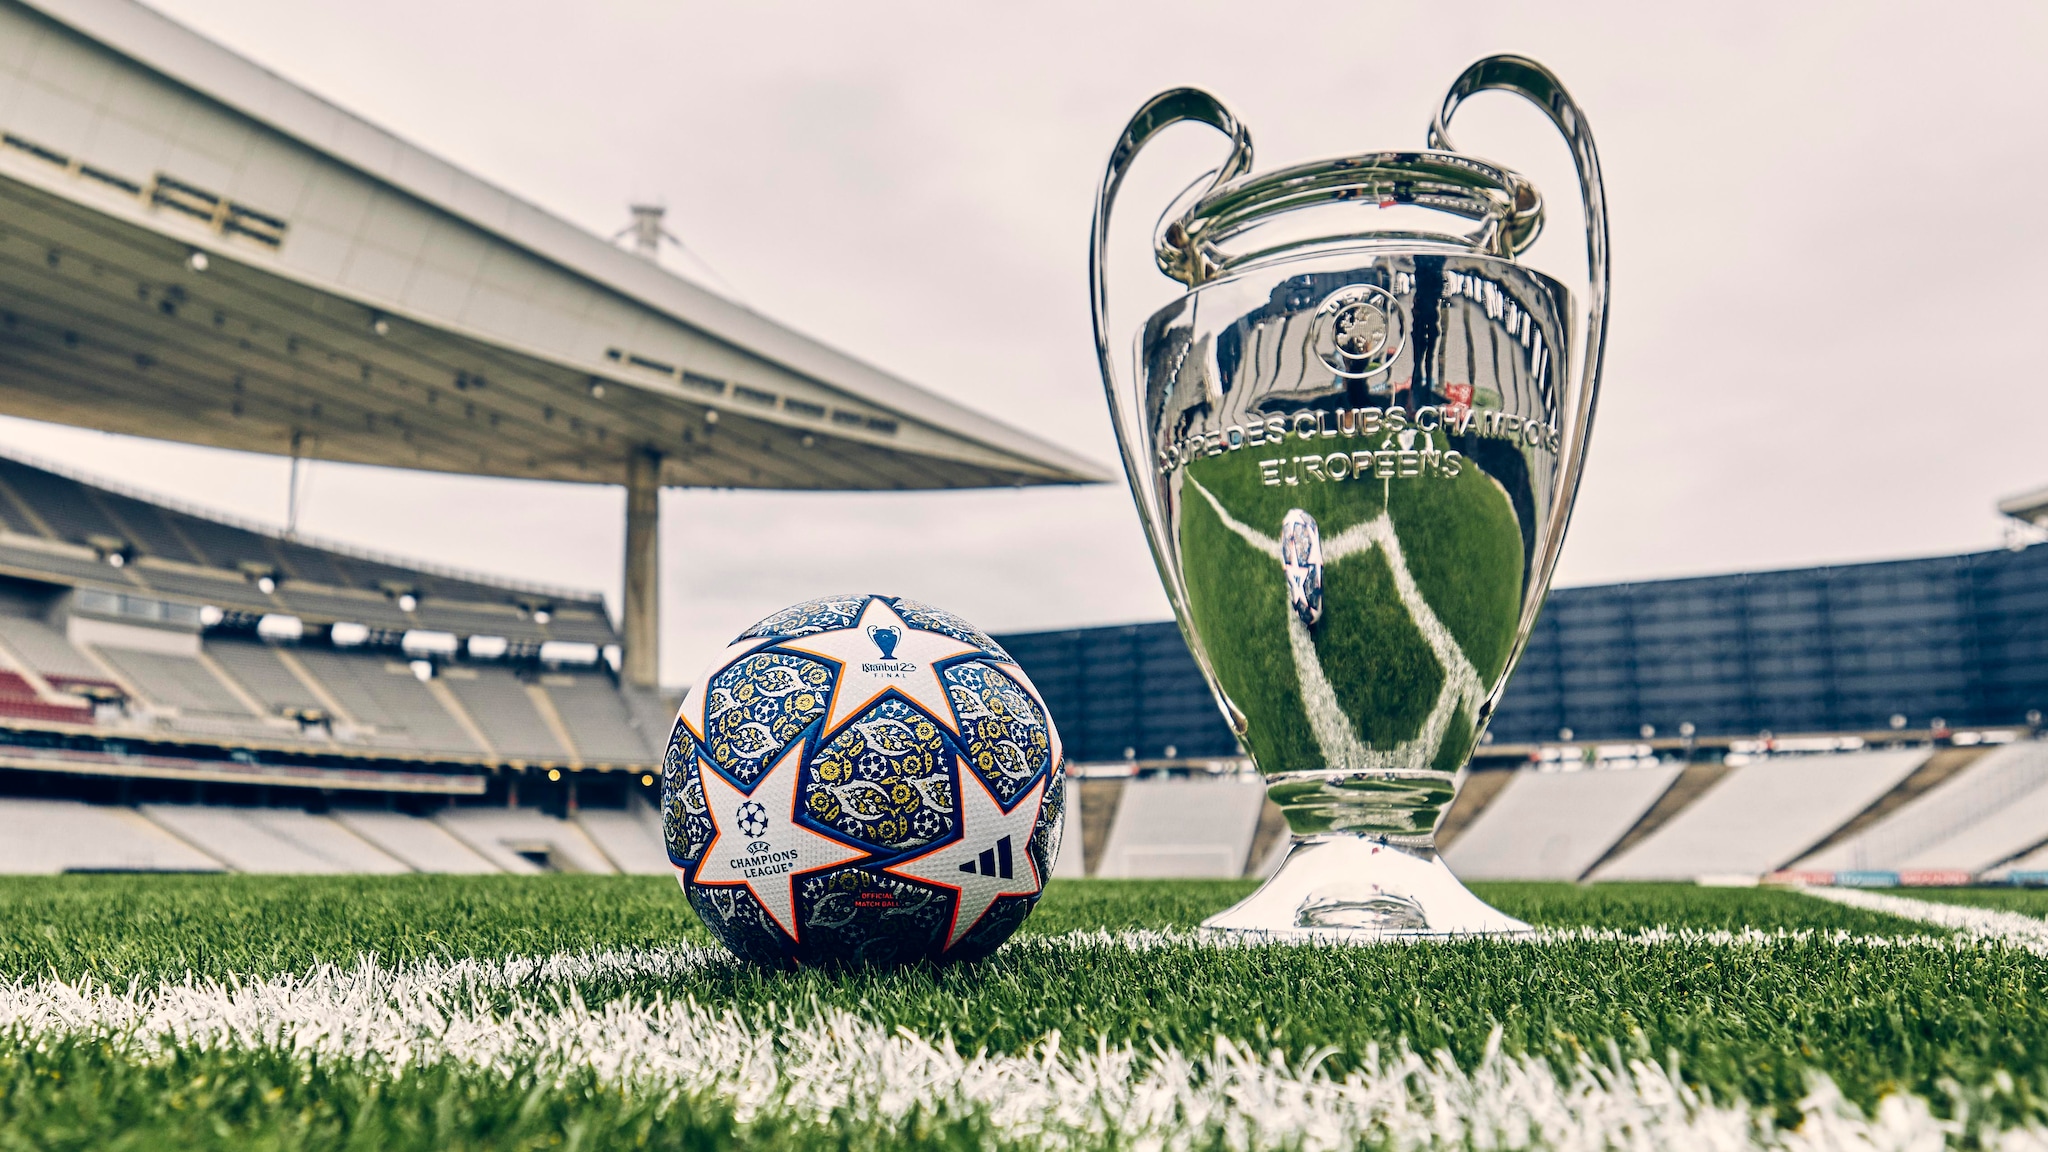 Offizieller EndspielBall der UEFA Champions League 2023 veröffentlicht